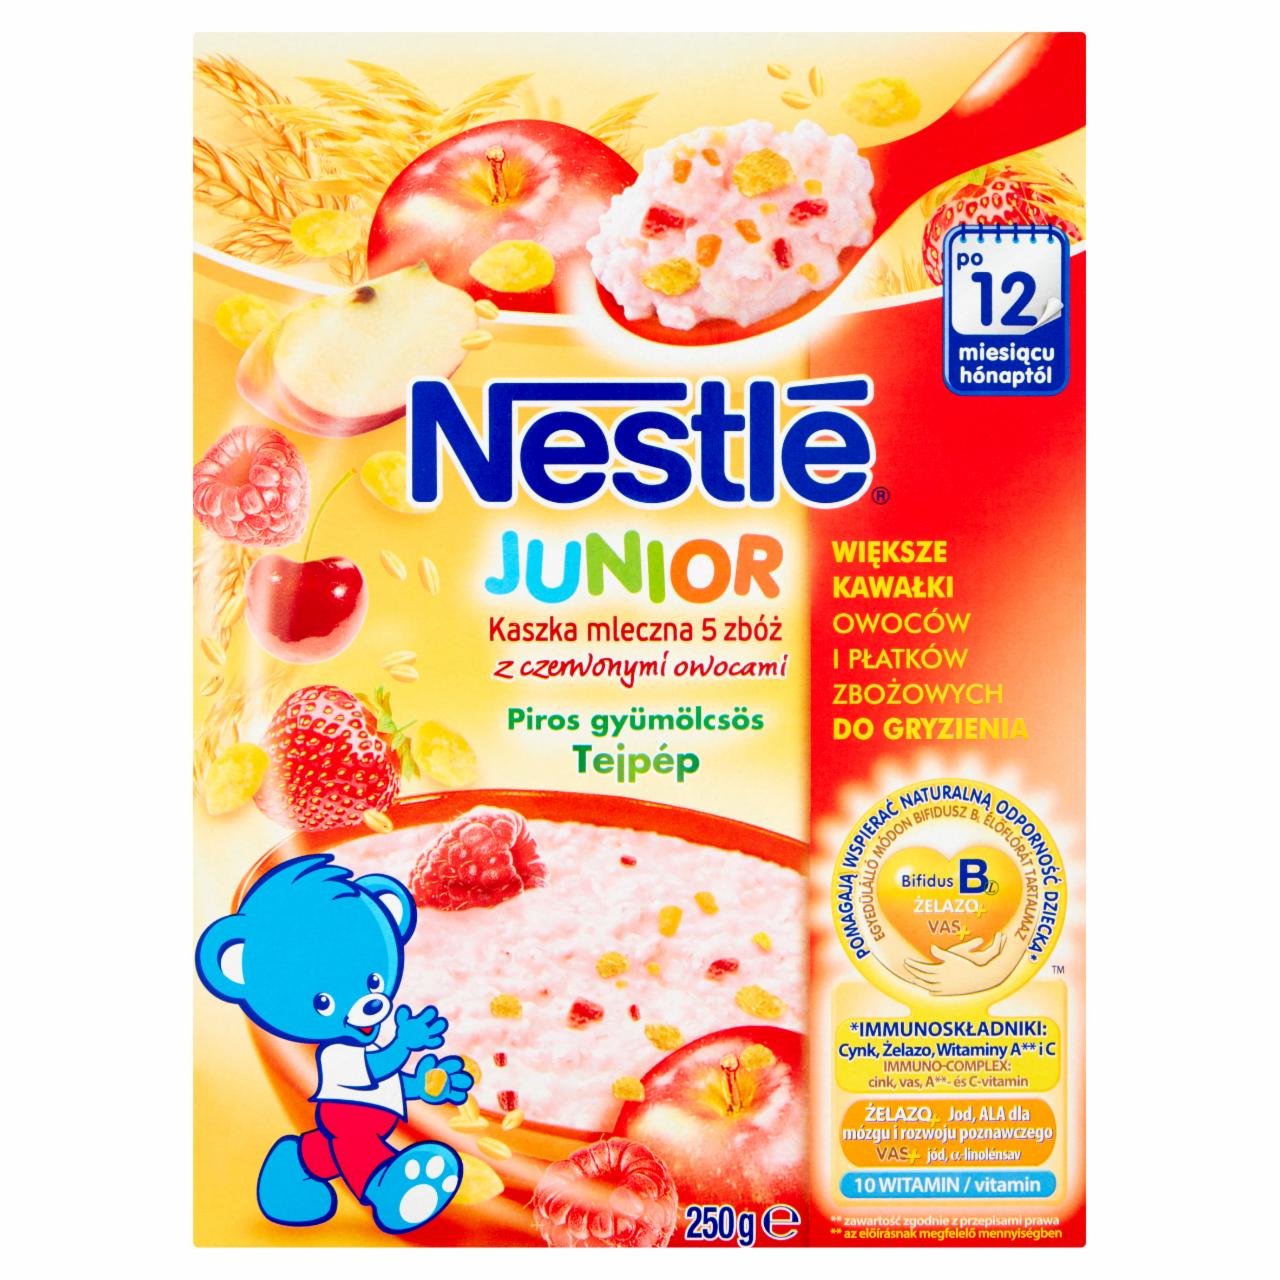 Zdjęcia - Nestlé Junior Kaszka mleczna 5 zbóż z czerwonymi owocami po 12 miesiącu 250 g